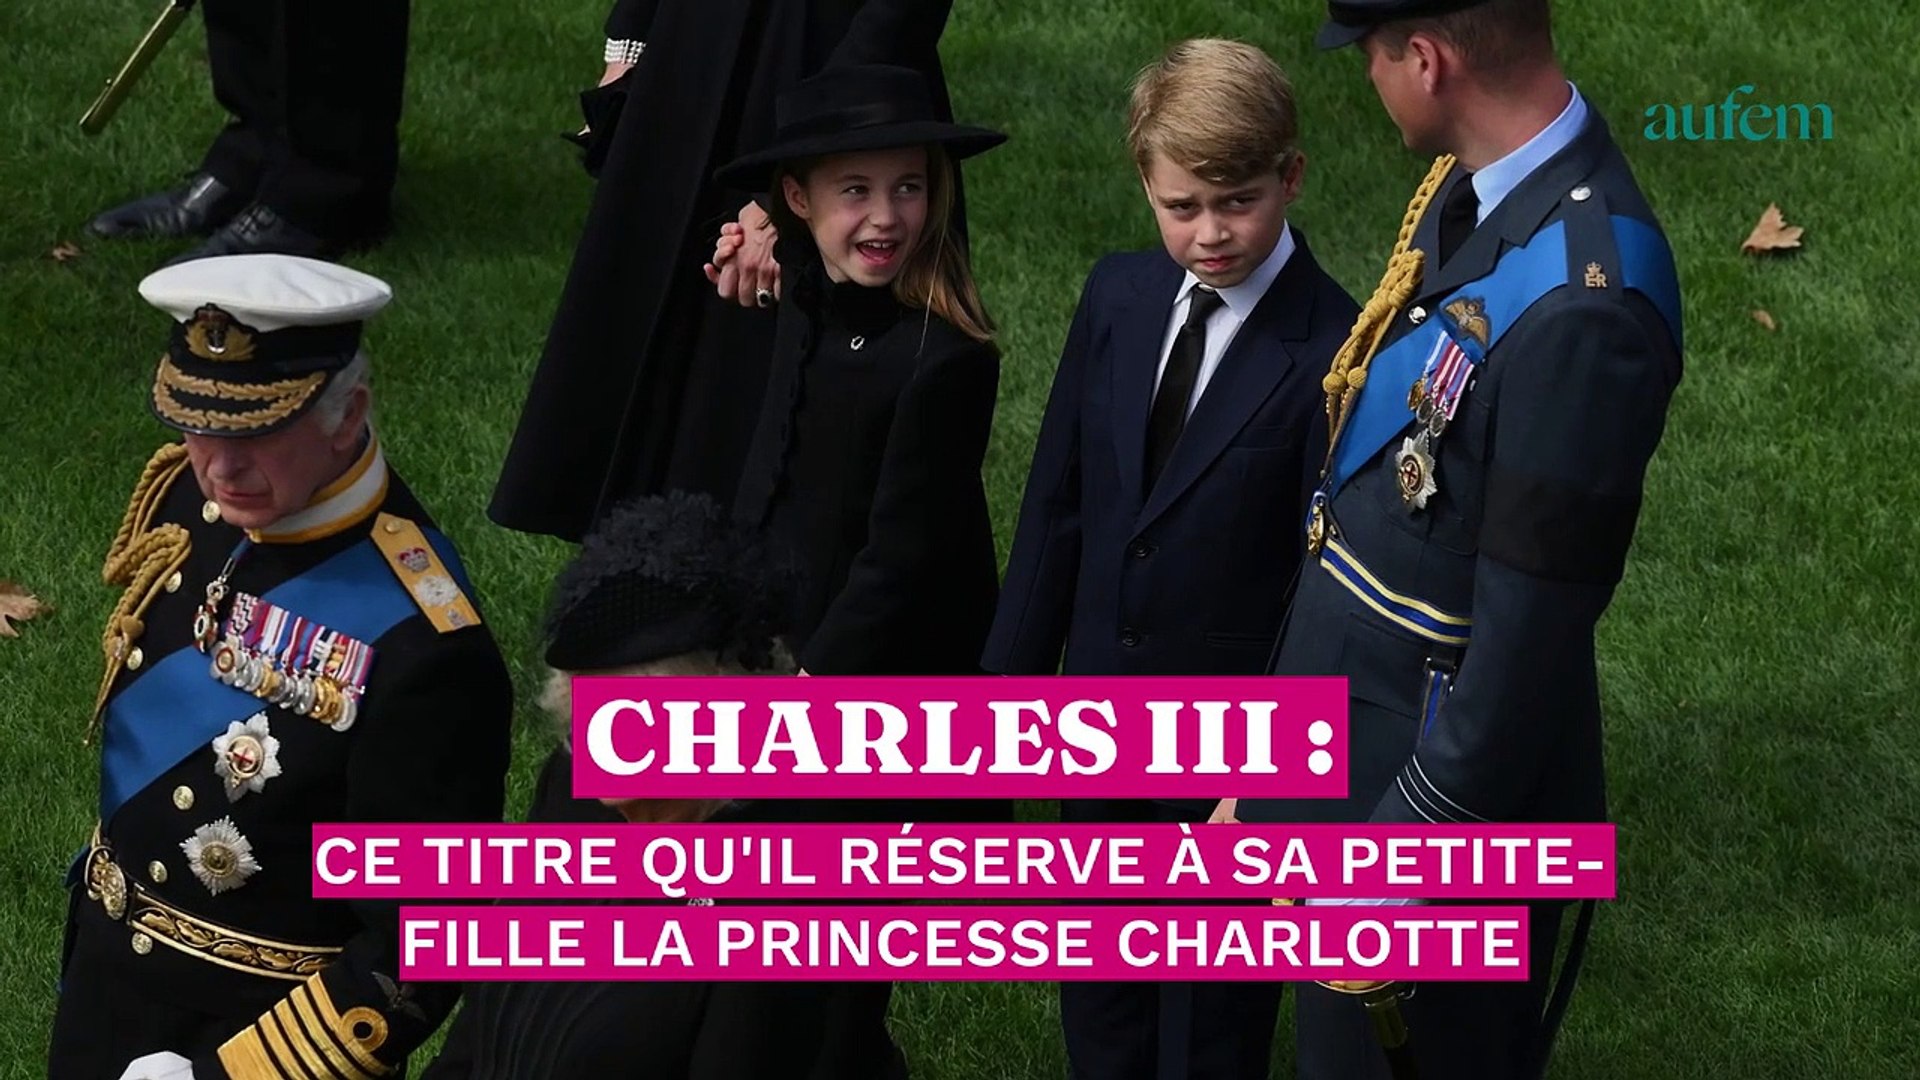 Charles III : ce titre qu'il réserve à sa petite-fille la princesse  Charlotte - Vidéo Dailymotion